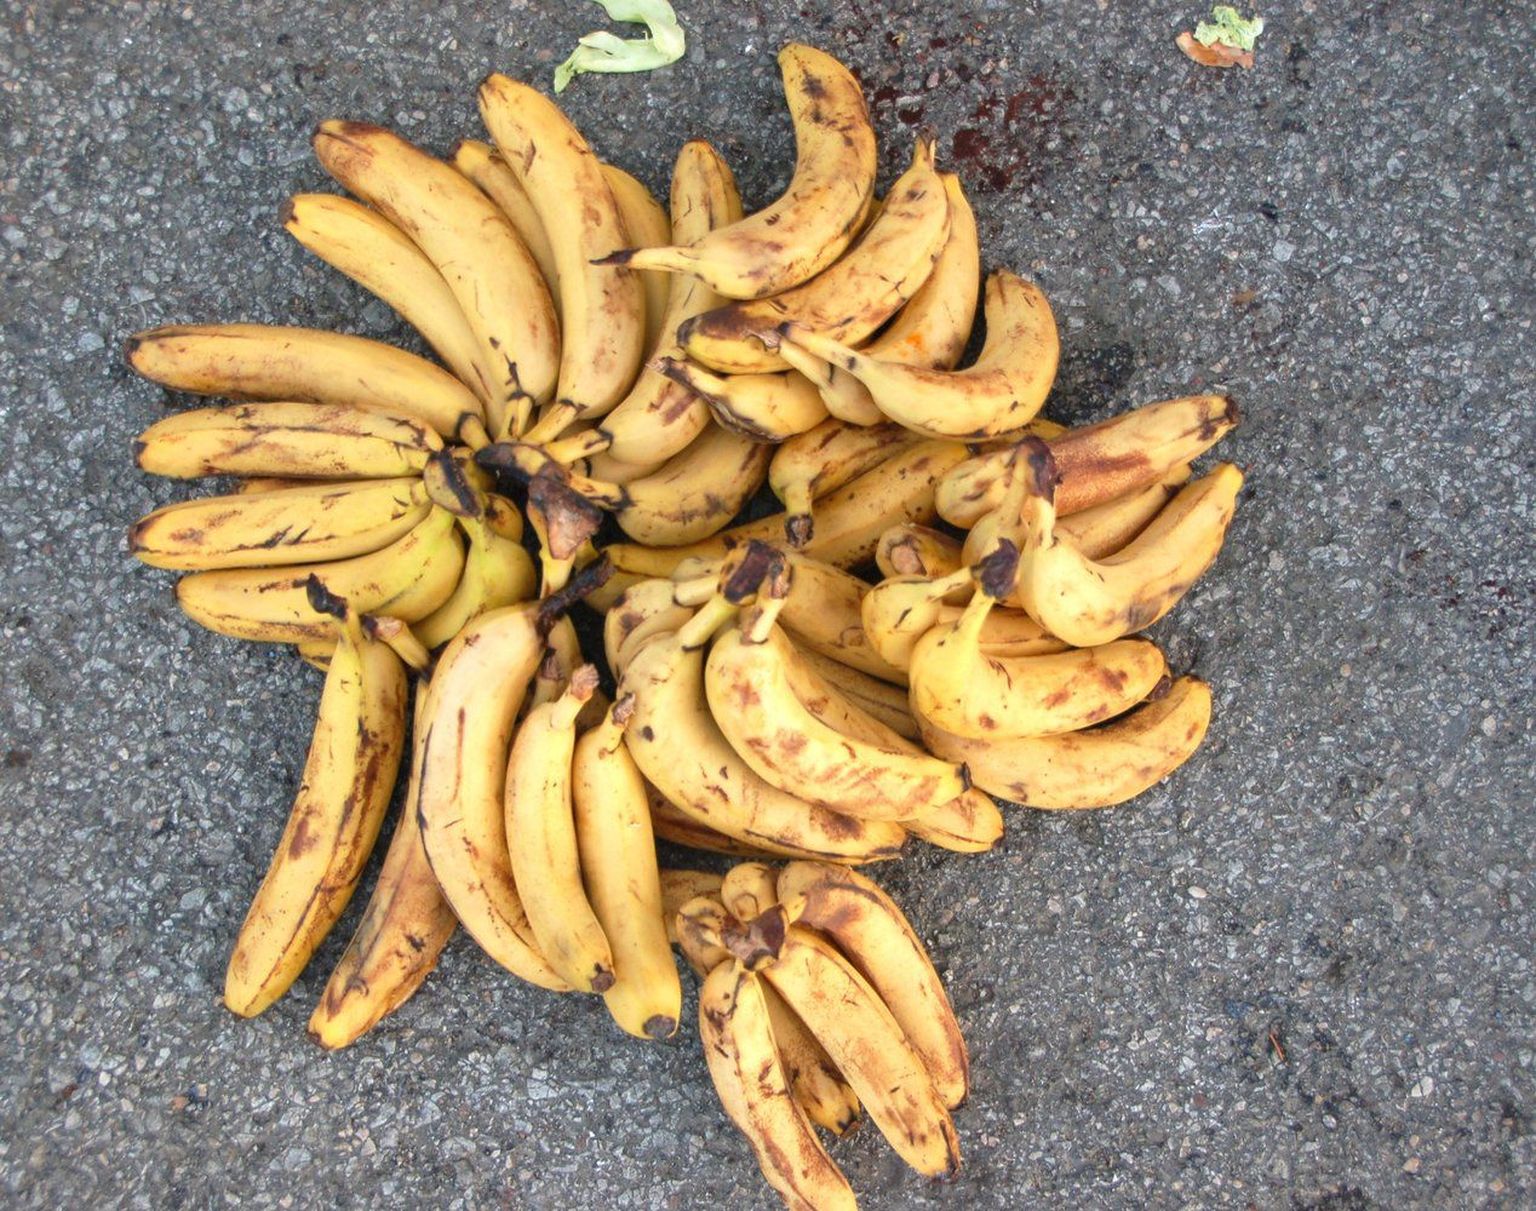 Sellised banaanid lähevad kauplustes mahakandmisele.